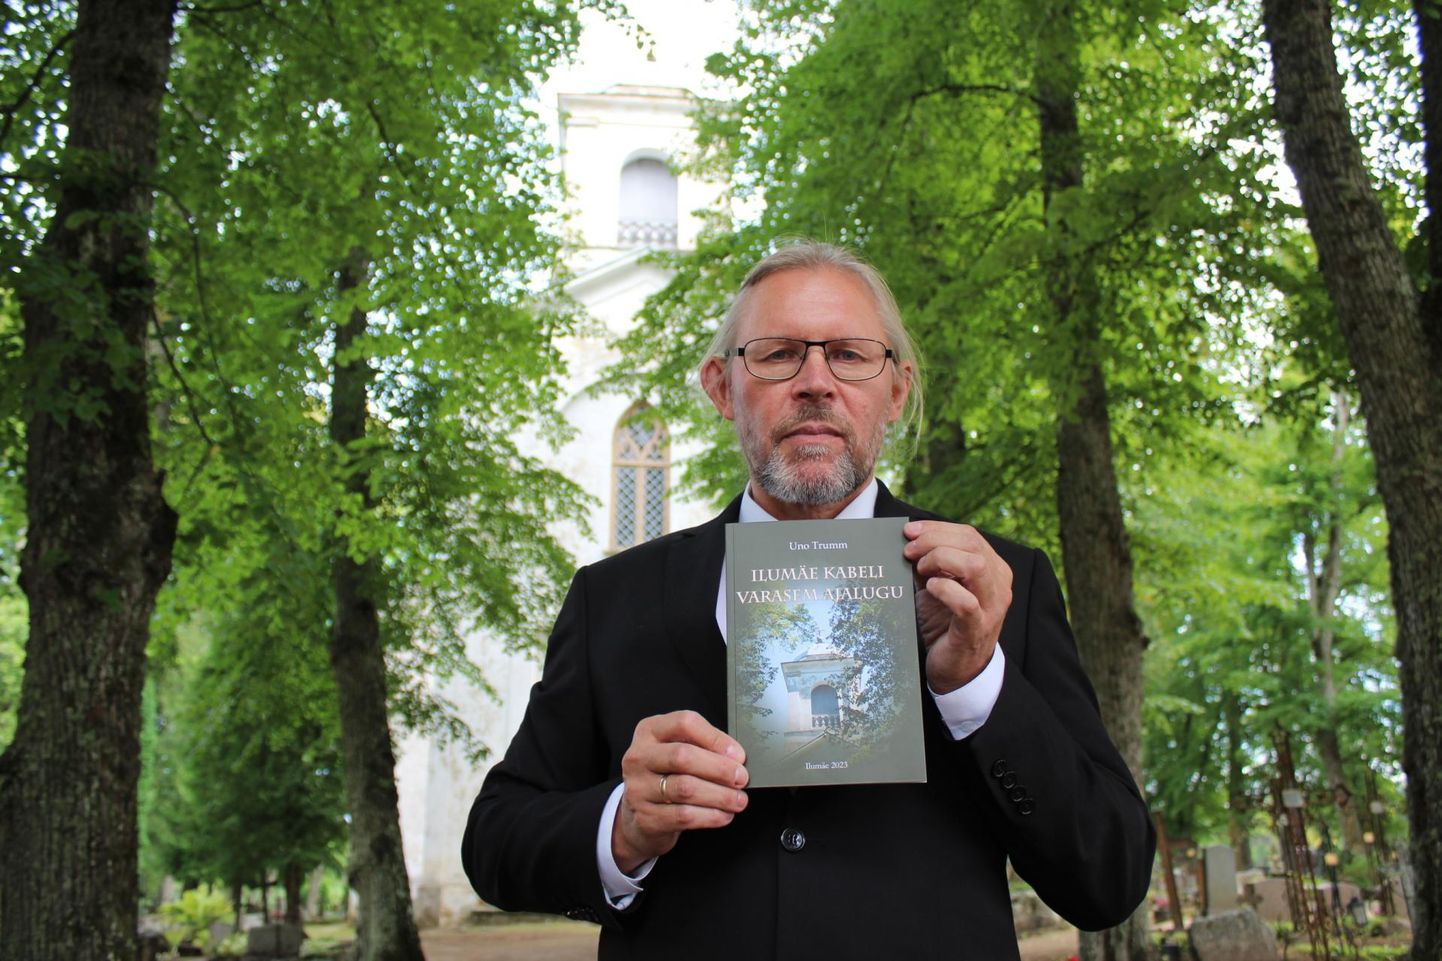 Uno Trumm raamatuga Ilumäe kabeli ees.